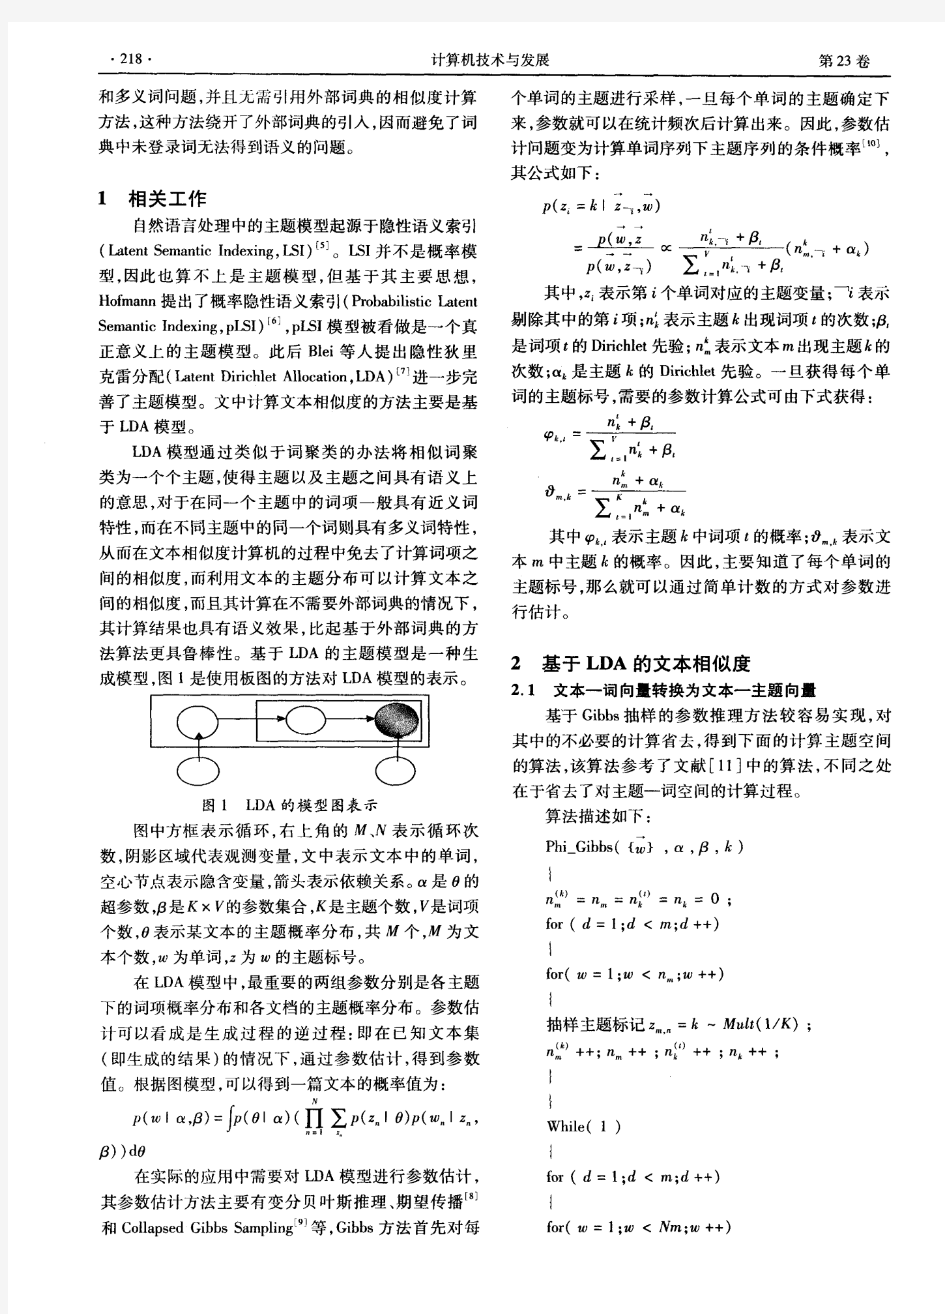 基于LDA的中文文本相似度计算